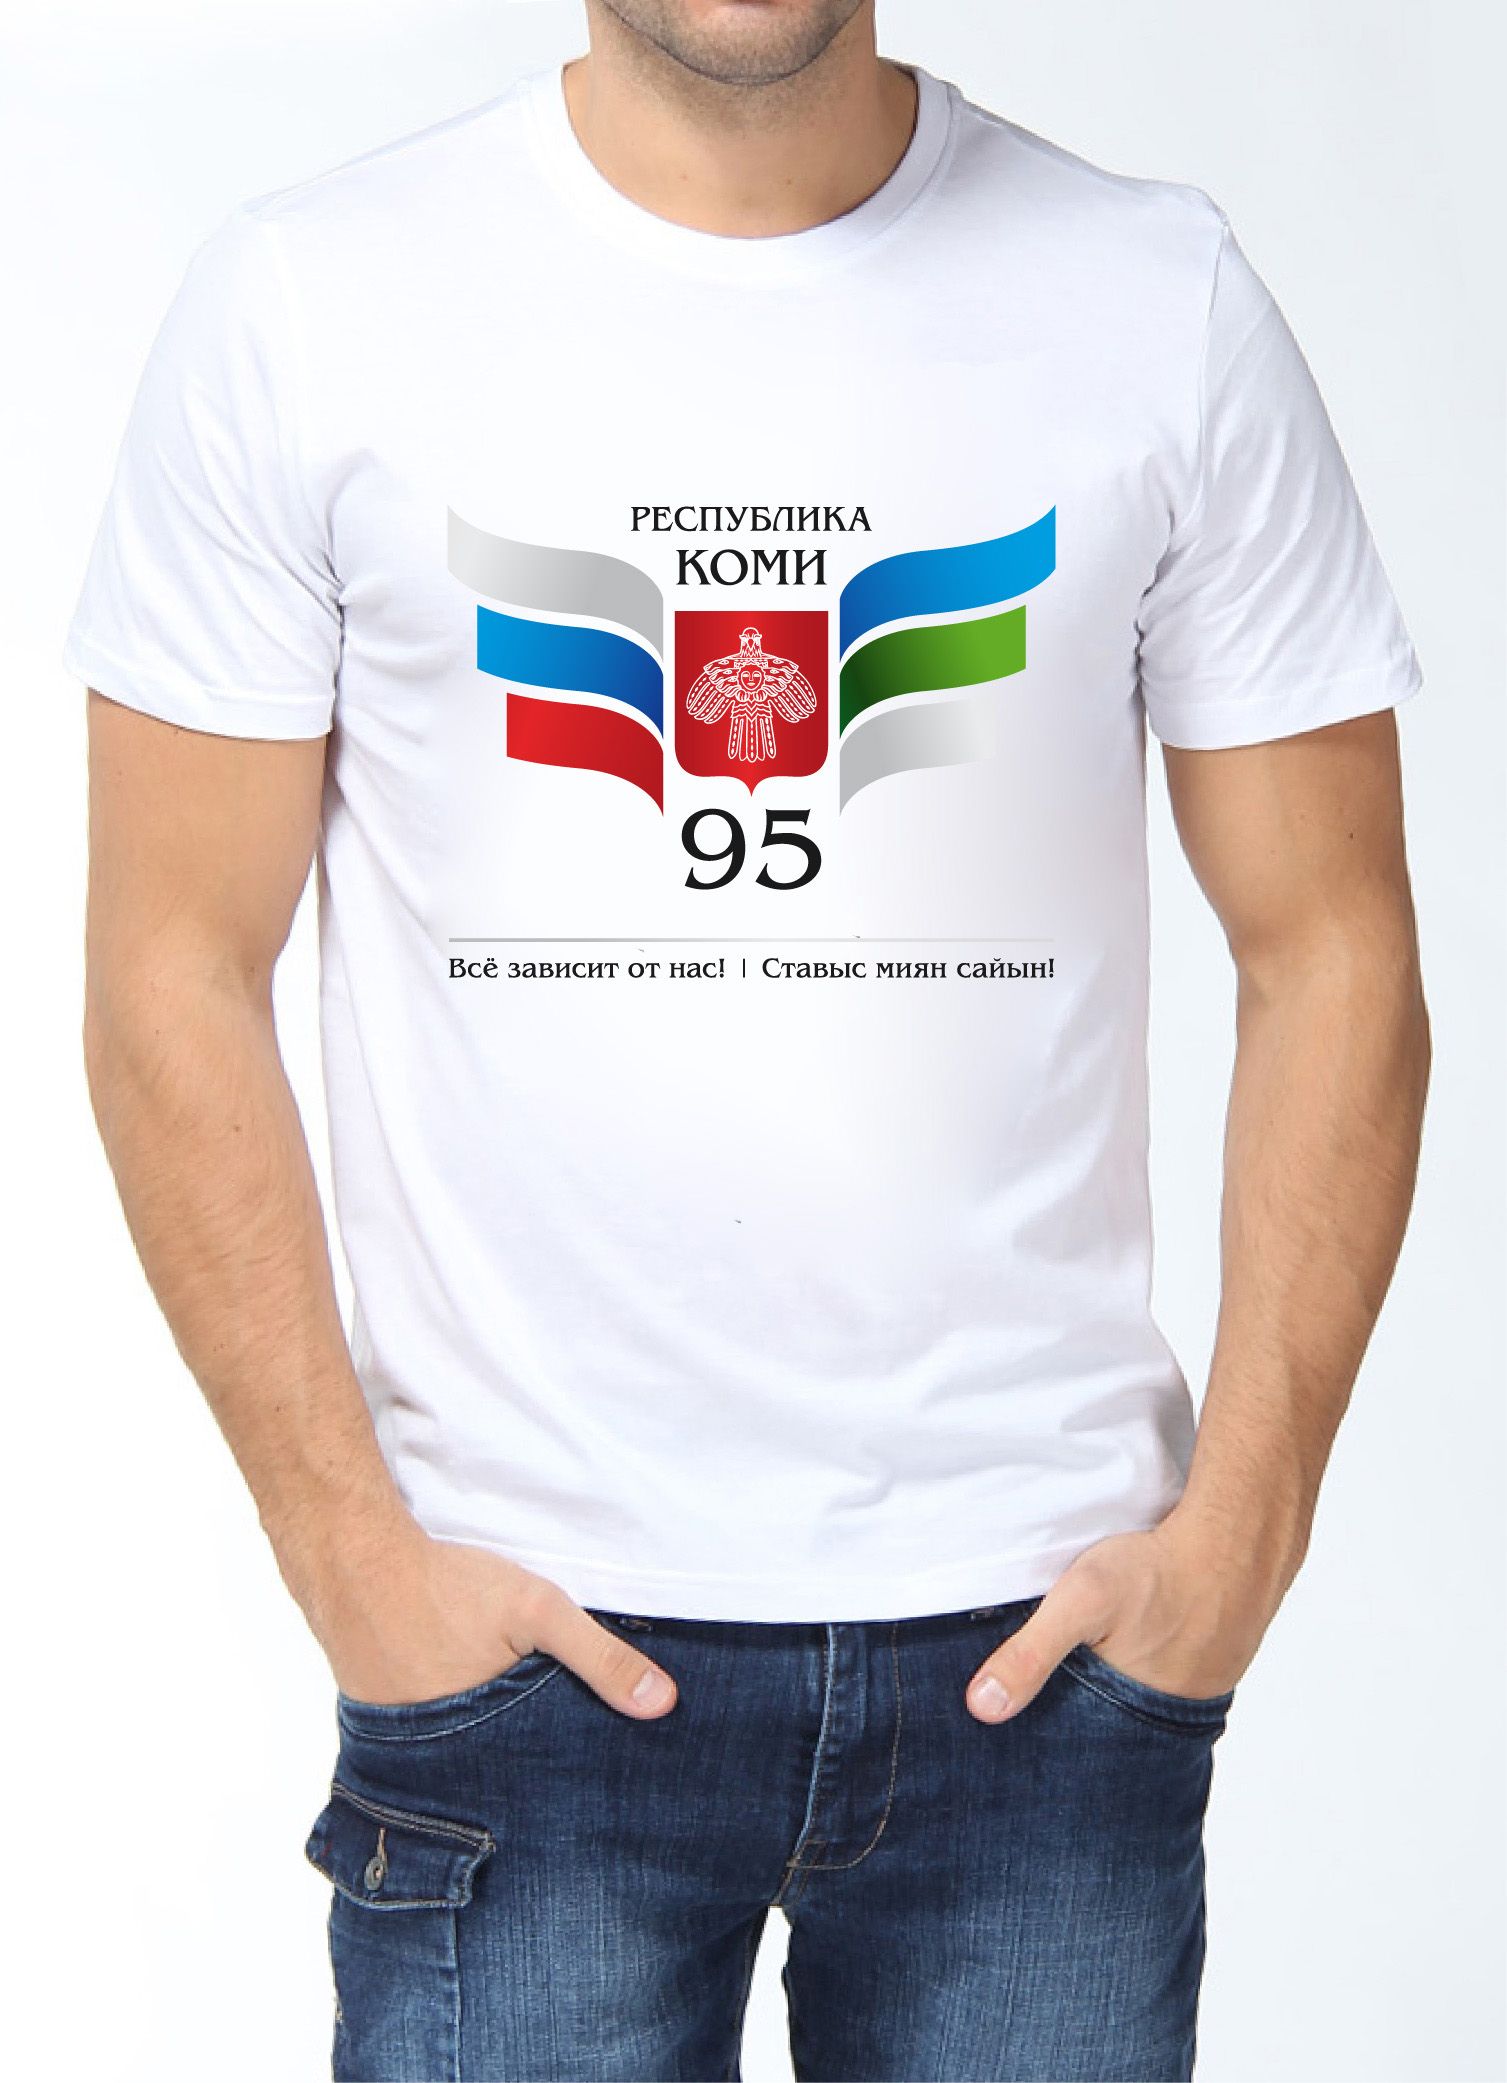 Лого и фирменный стиль для 95 лет Республике Коми  - дизайнер Galutsky